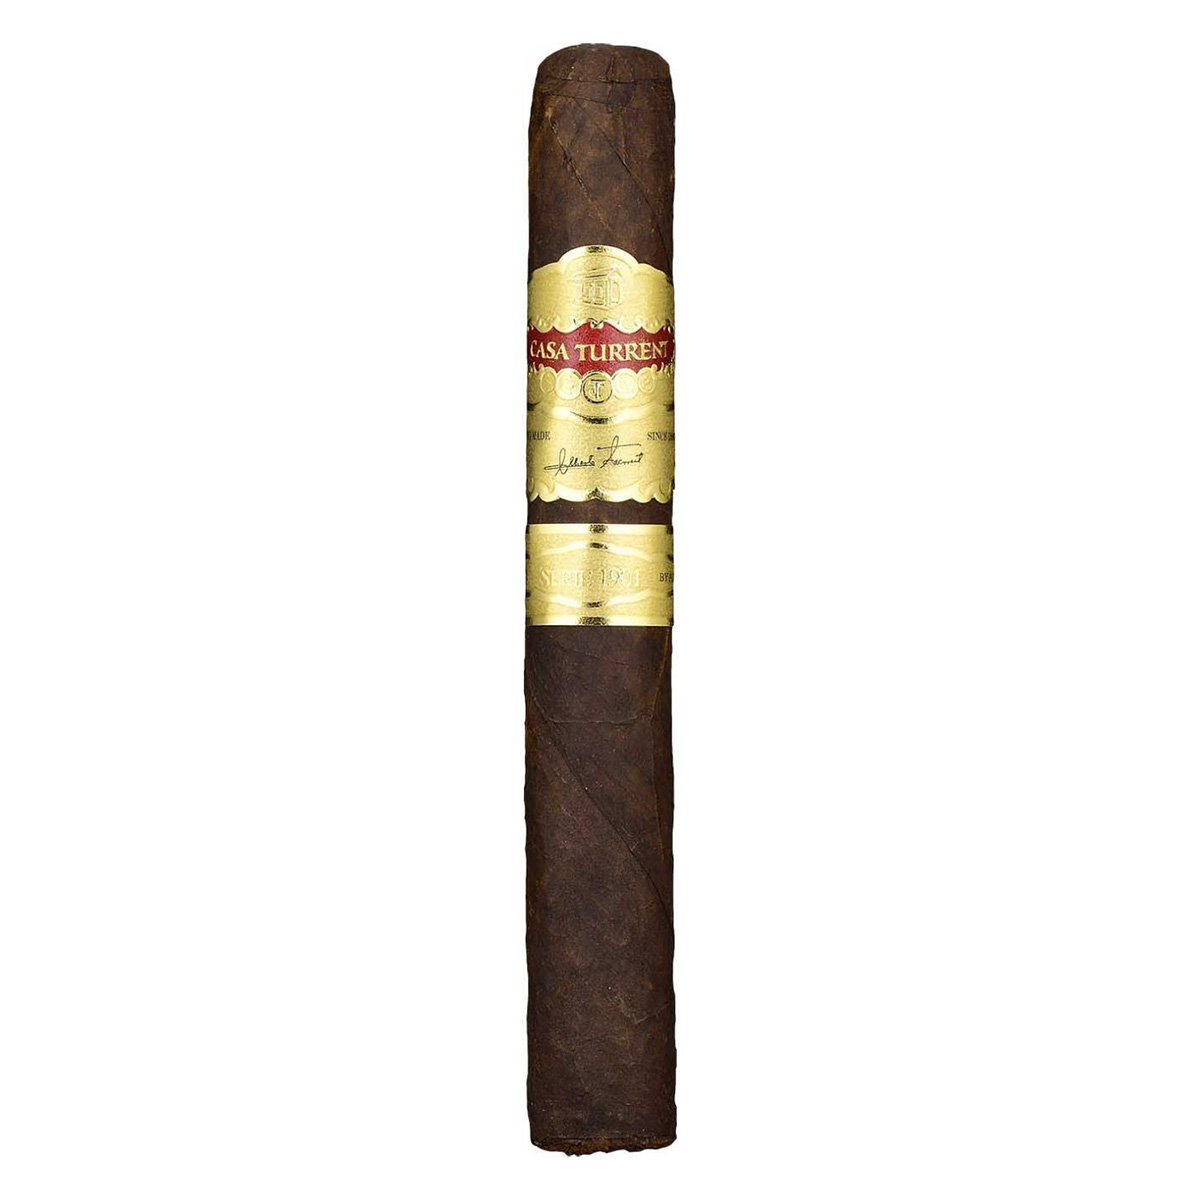 New World Cigar Sampler Pack - Mexico (Medium)